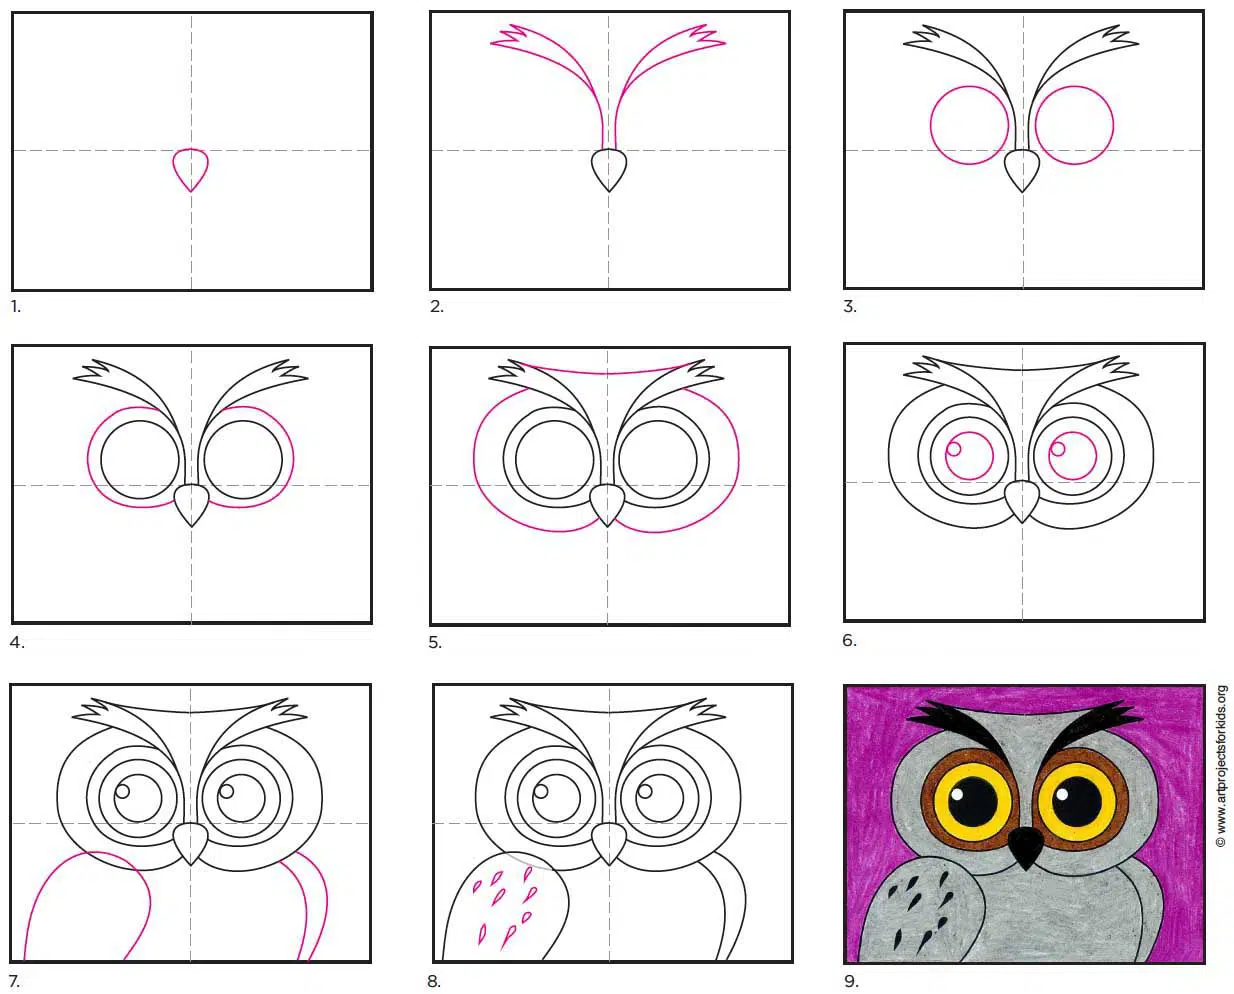 https://artprojectsforkids.org/wp-content/uploads/2021/10/How-to-Draw-an-Owl-Face-diagram.jpg.webp